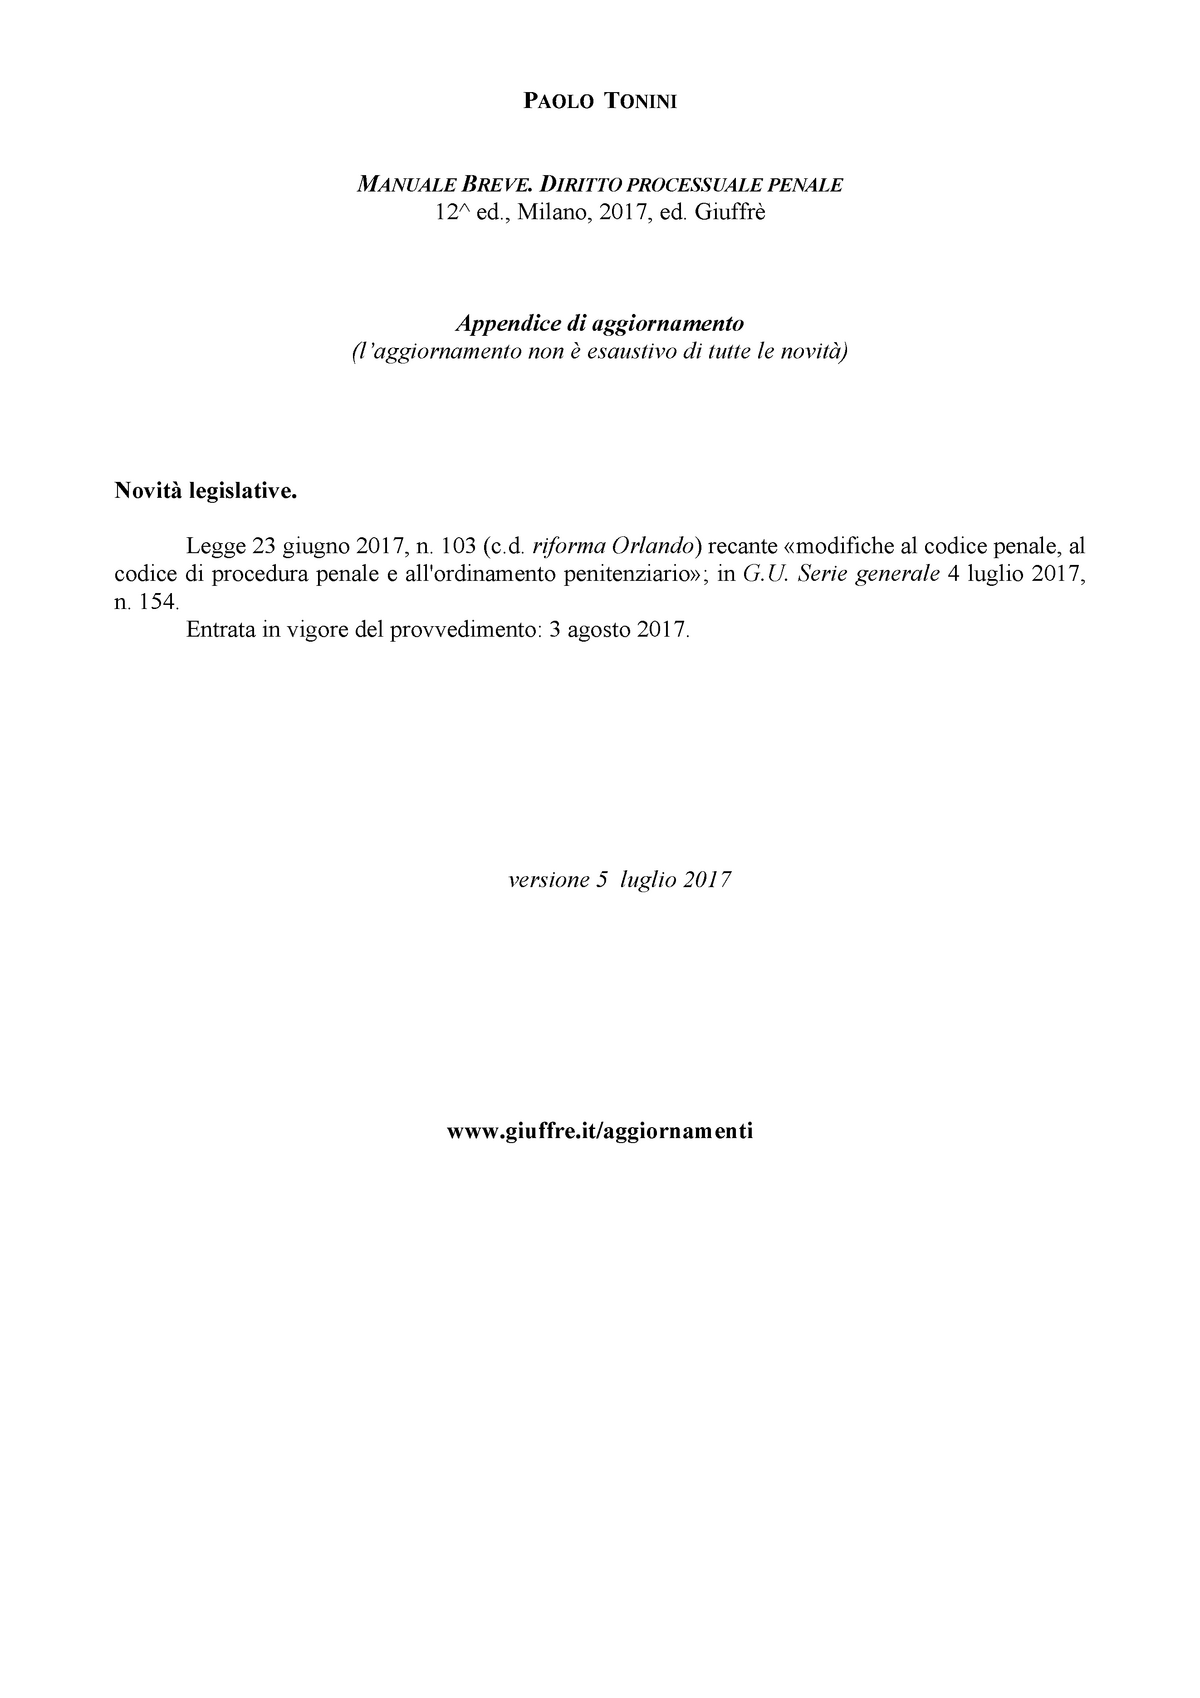 Addenda 2 Manuale Breve Procedura Penale Prof Tonini 2017 Studocu